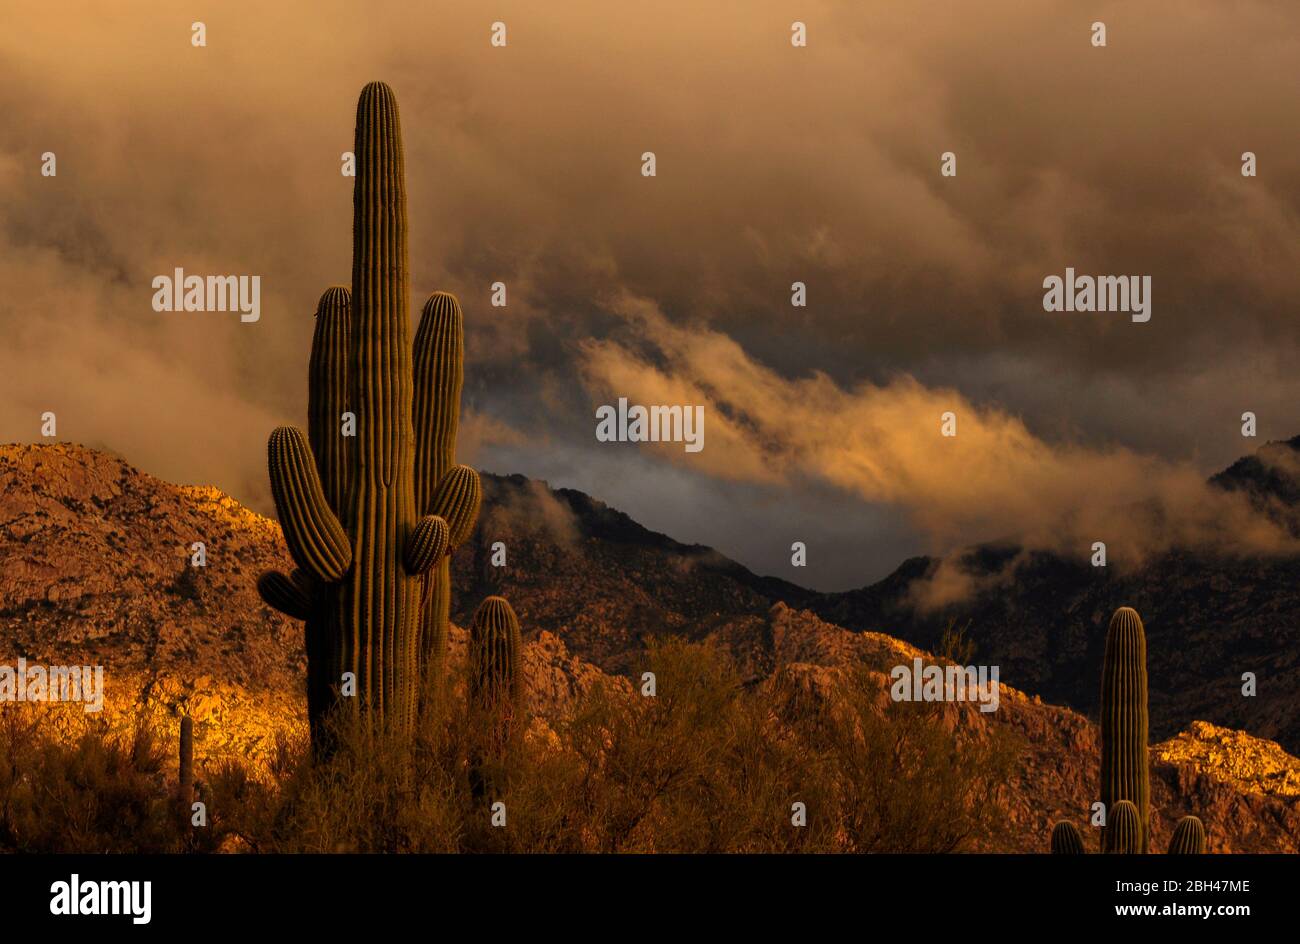 Le coucher du soleil illumine le ciel après une tempête hivernale sur les montagnes de Santa Catalina, la forêt nationale de Coronado, le désert de Sonoran, la vallée d'Oro, Arizona, États-Unis Banque D'Images